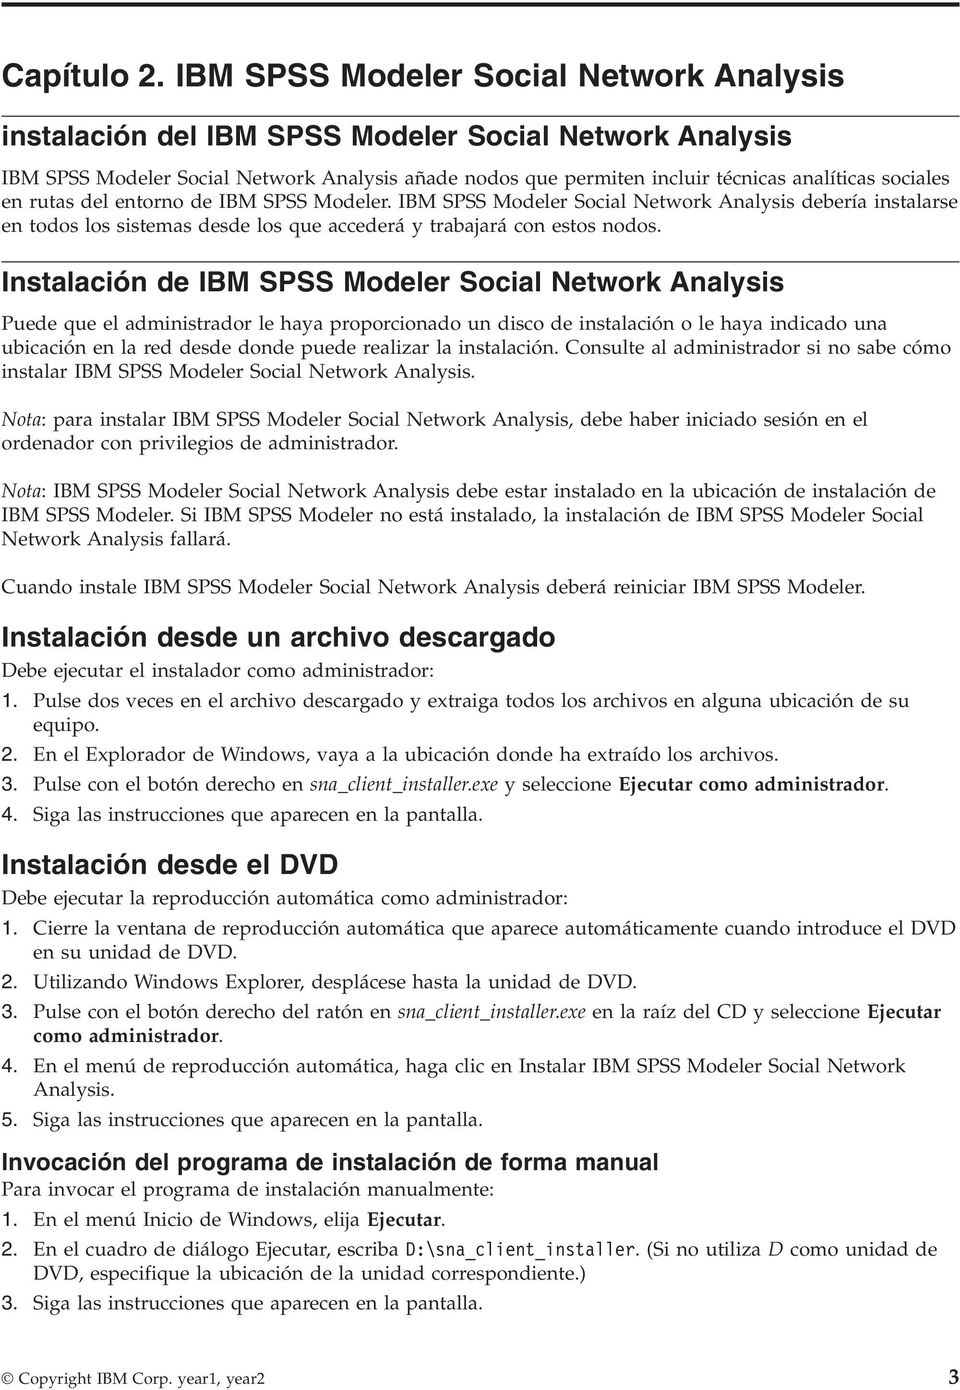 sociales en rutas del entorno de IBM SPSS Modeler. IBM SPSS Modeler Social Network Analysis debería instalarse en todos los sistemas desde los que accederá y trabajará con estos nodos.